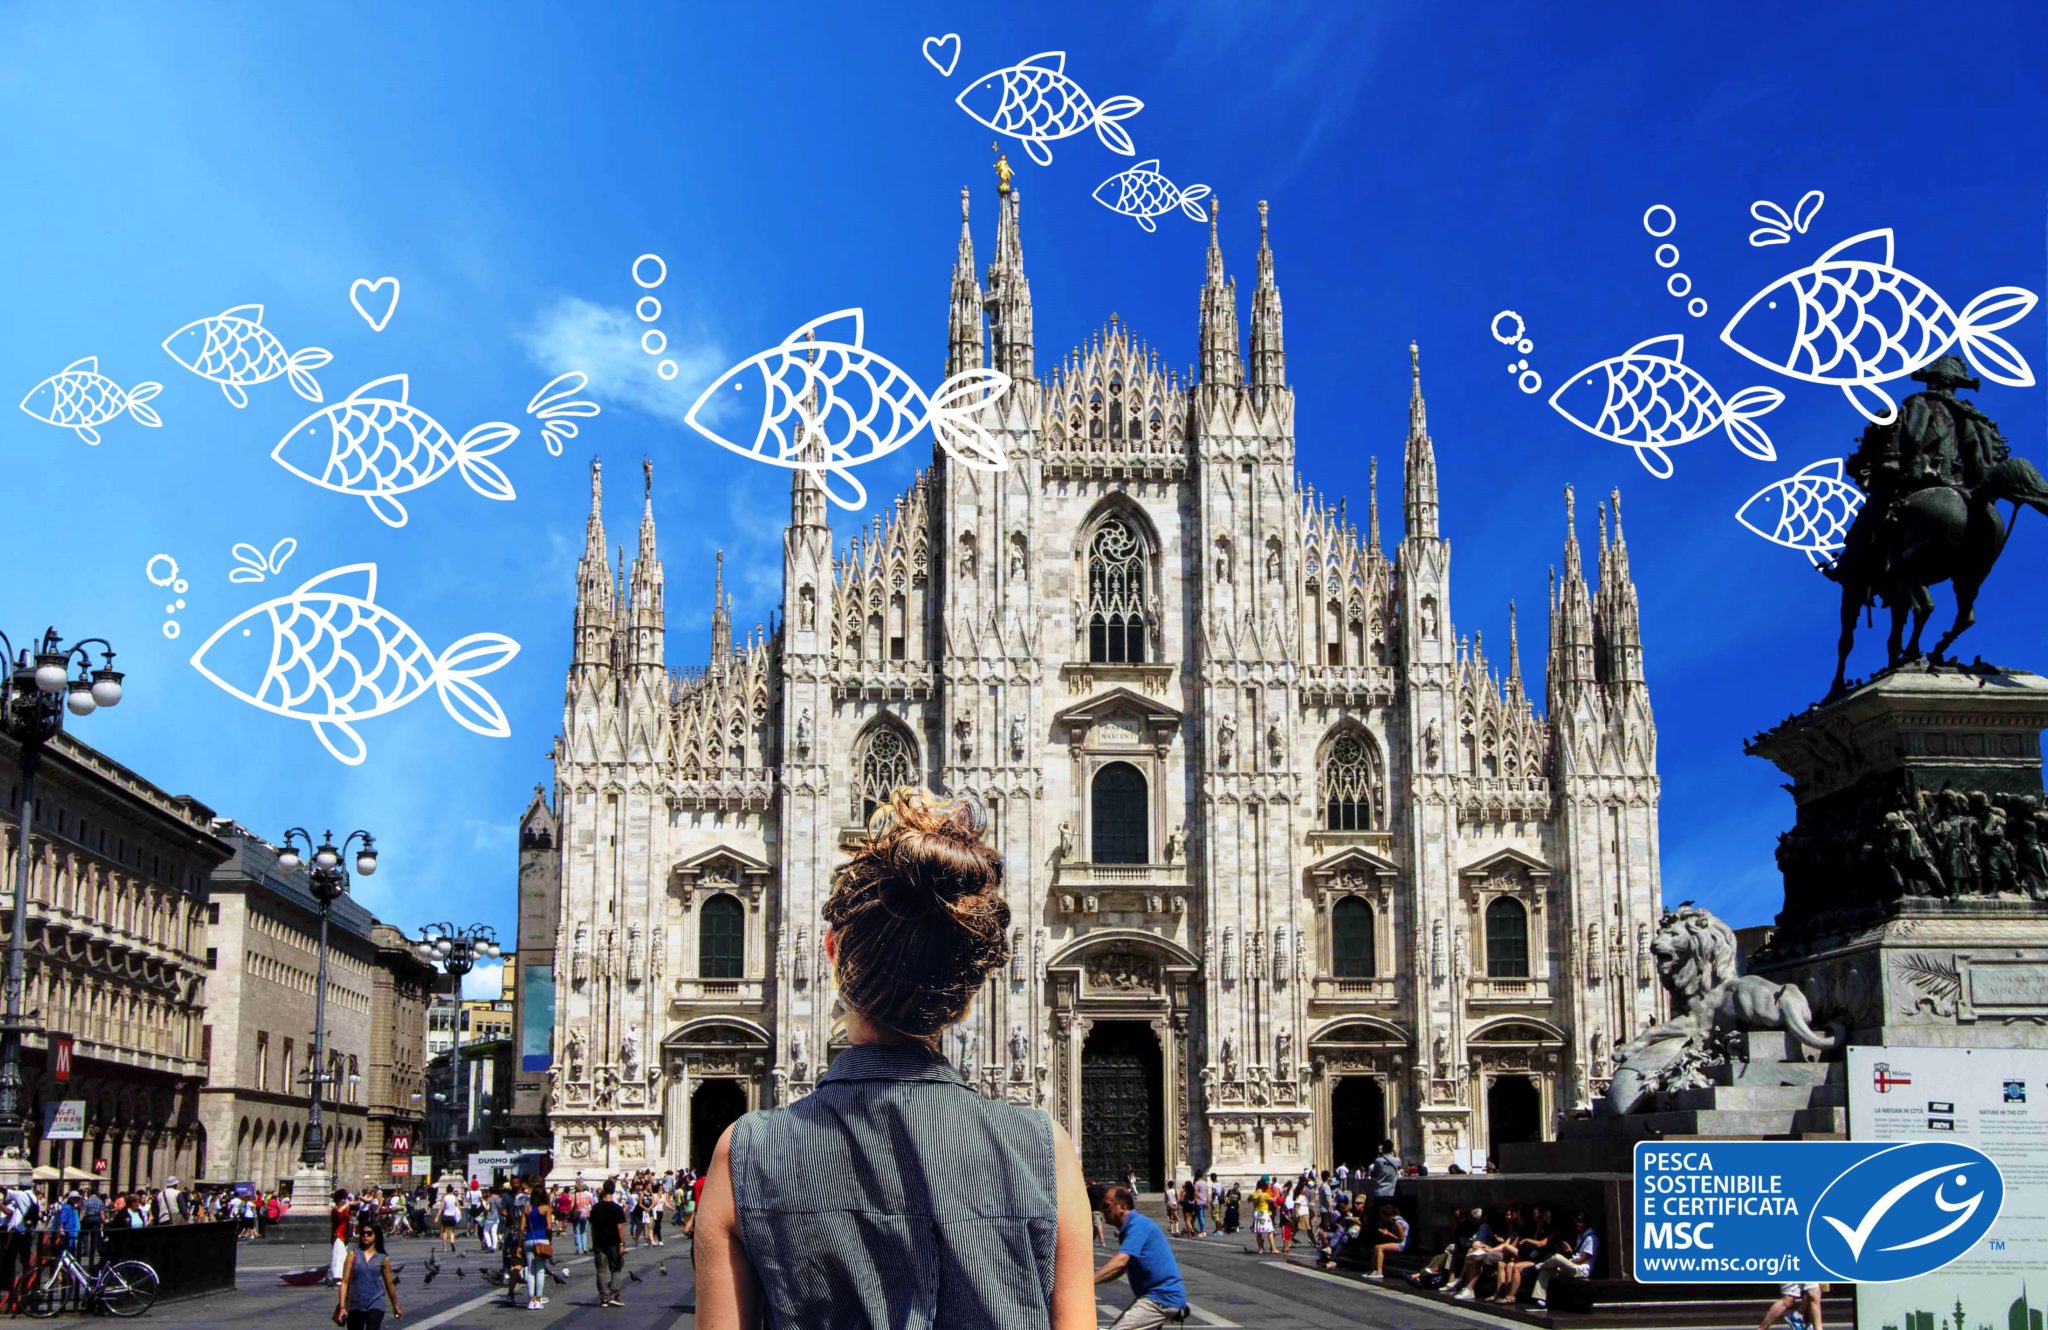 BluFishmob, una miriade di pesci volanti nei cieli di Milano